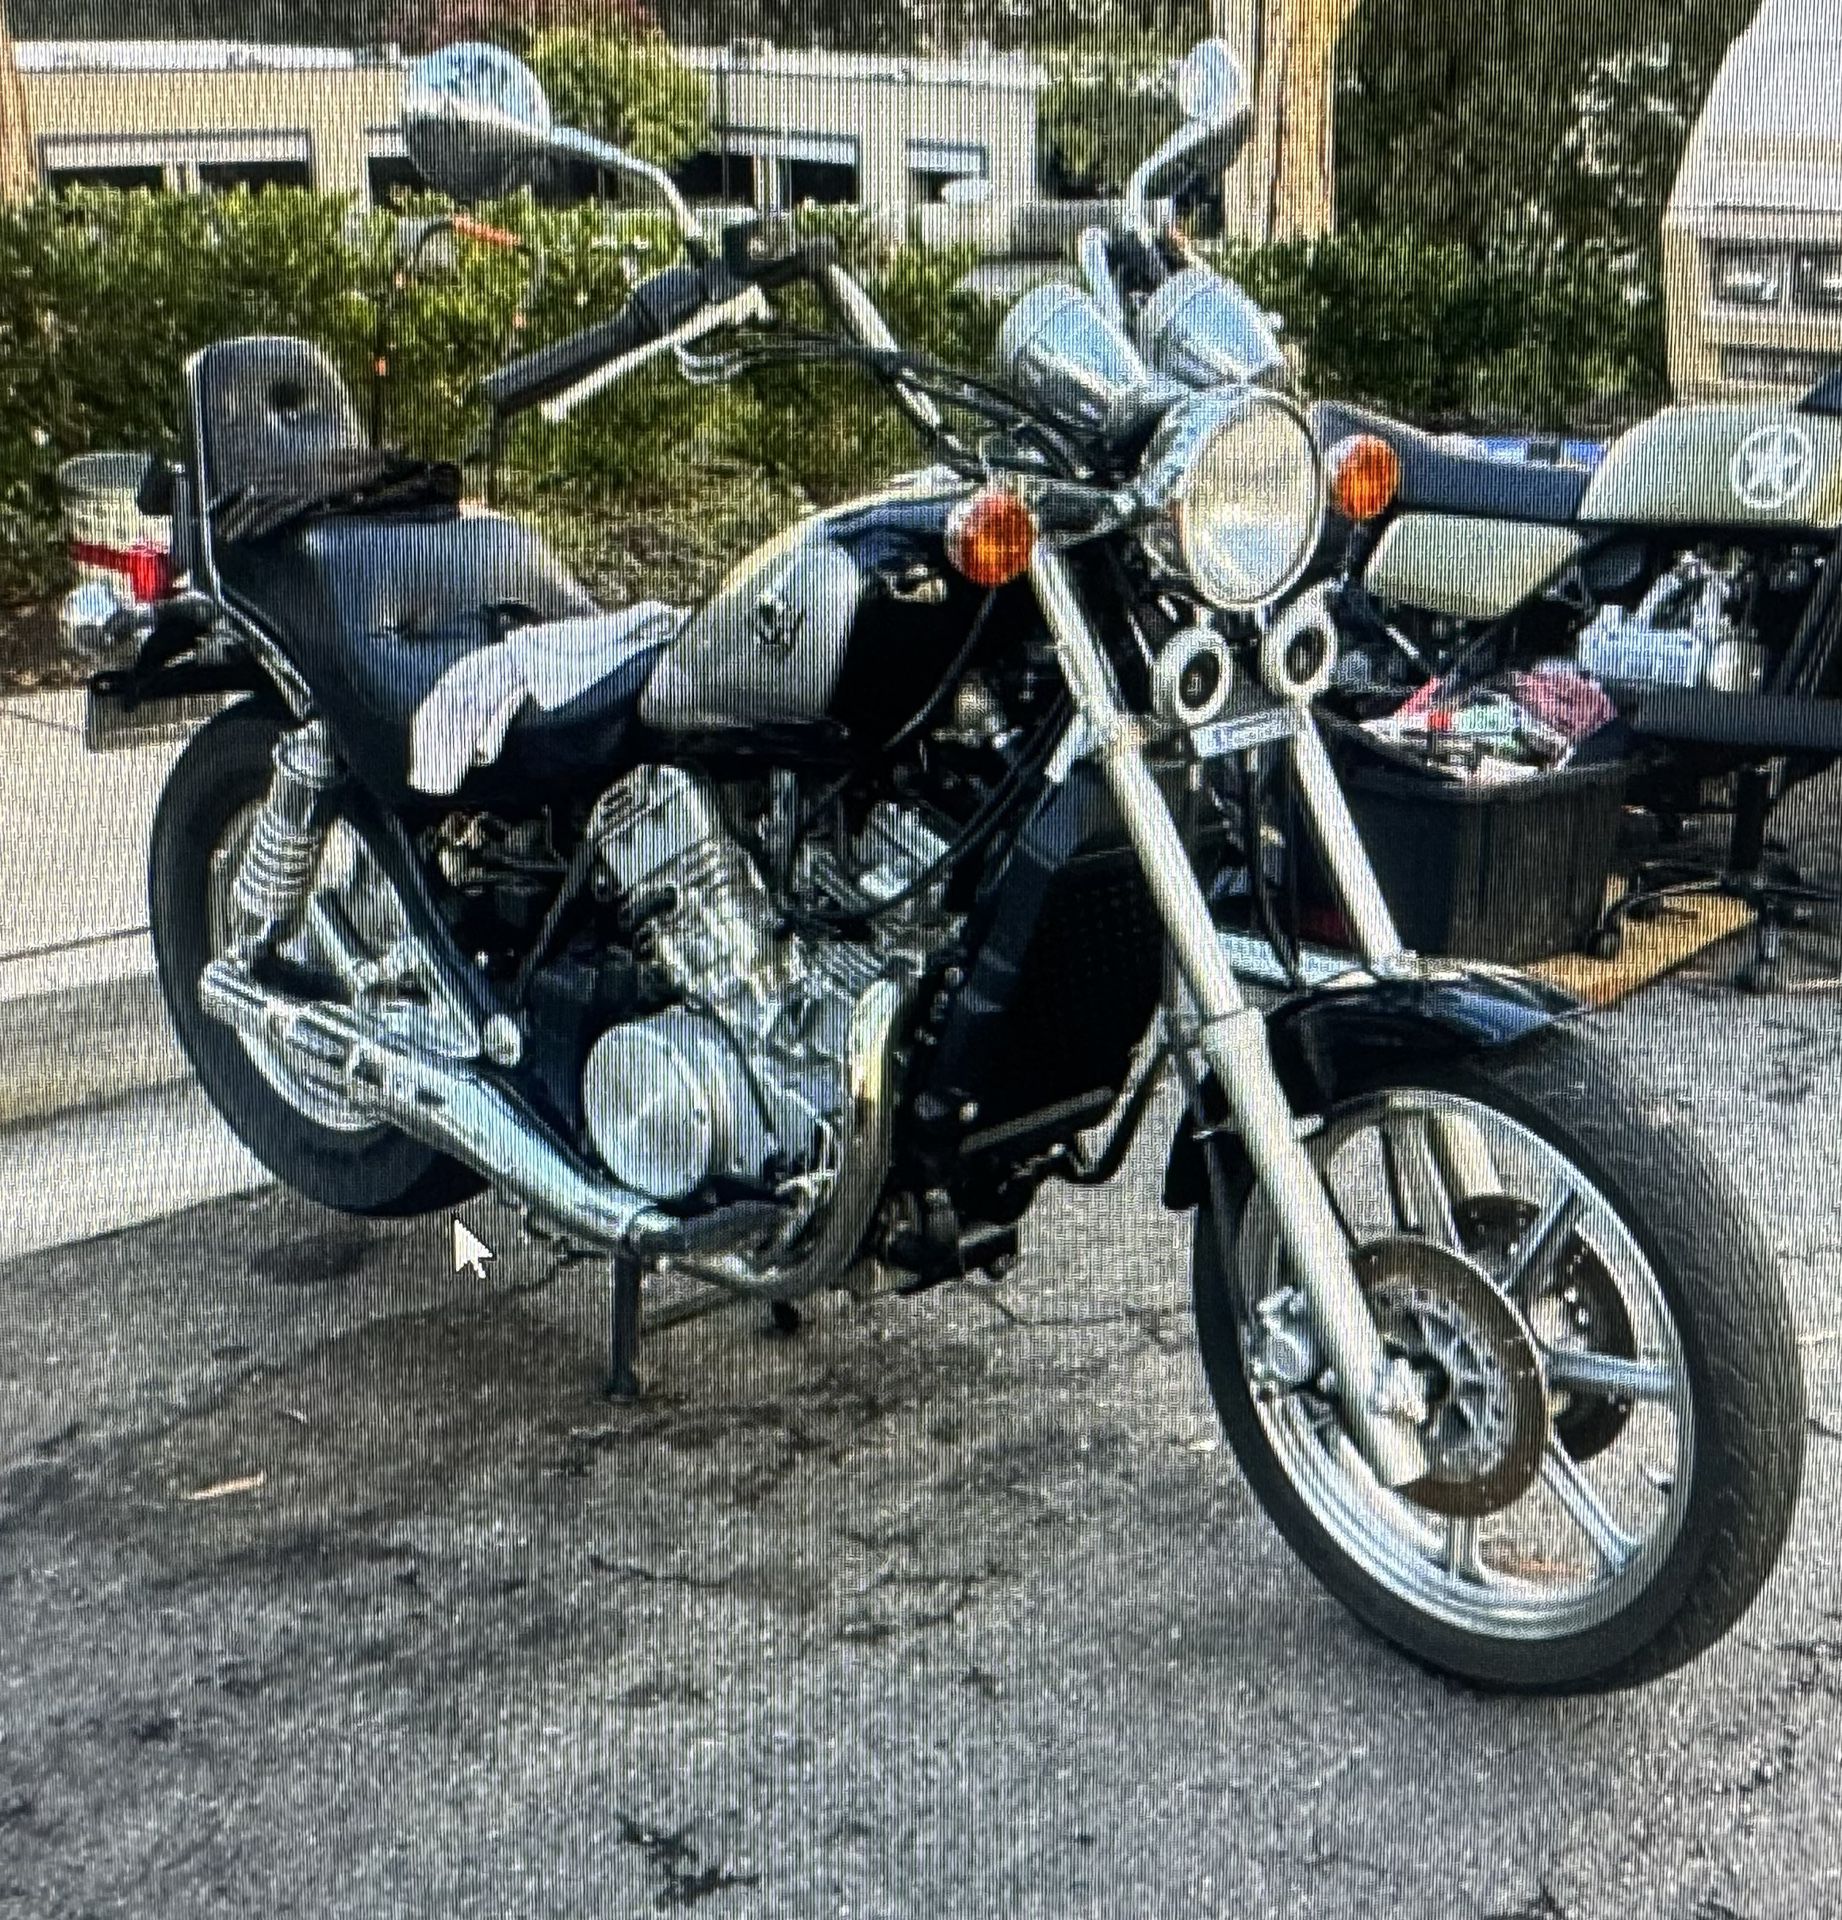 2002 Kawasaki & 1974 Honda Motorcycle 